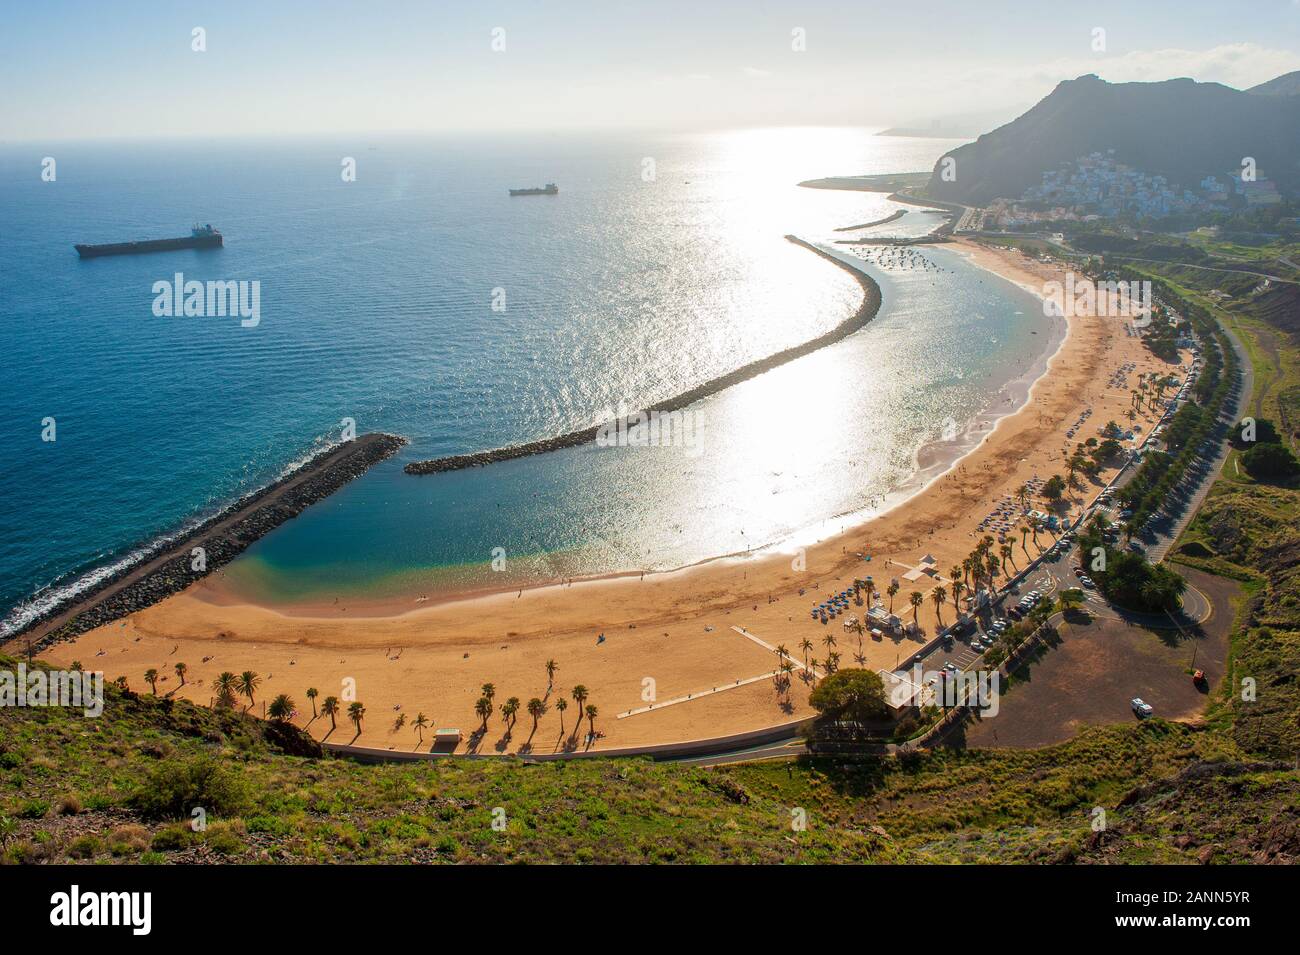 Playa de Las Teresitas est la plus belle plage de l'île canarienne de Tenerife. Le sable blanc a été expédié depuis le désert du Sahara. Banque D'Images